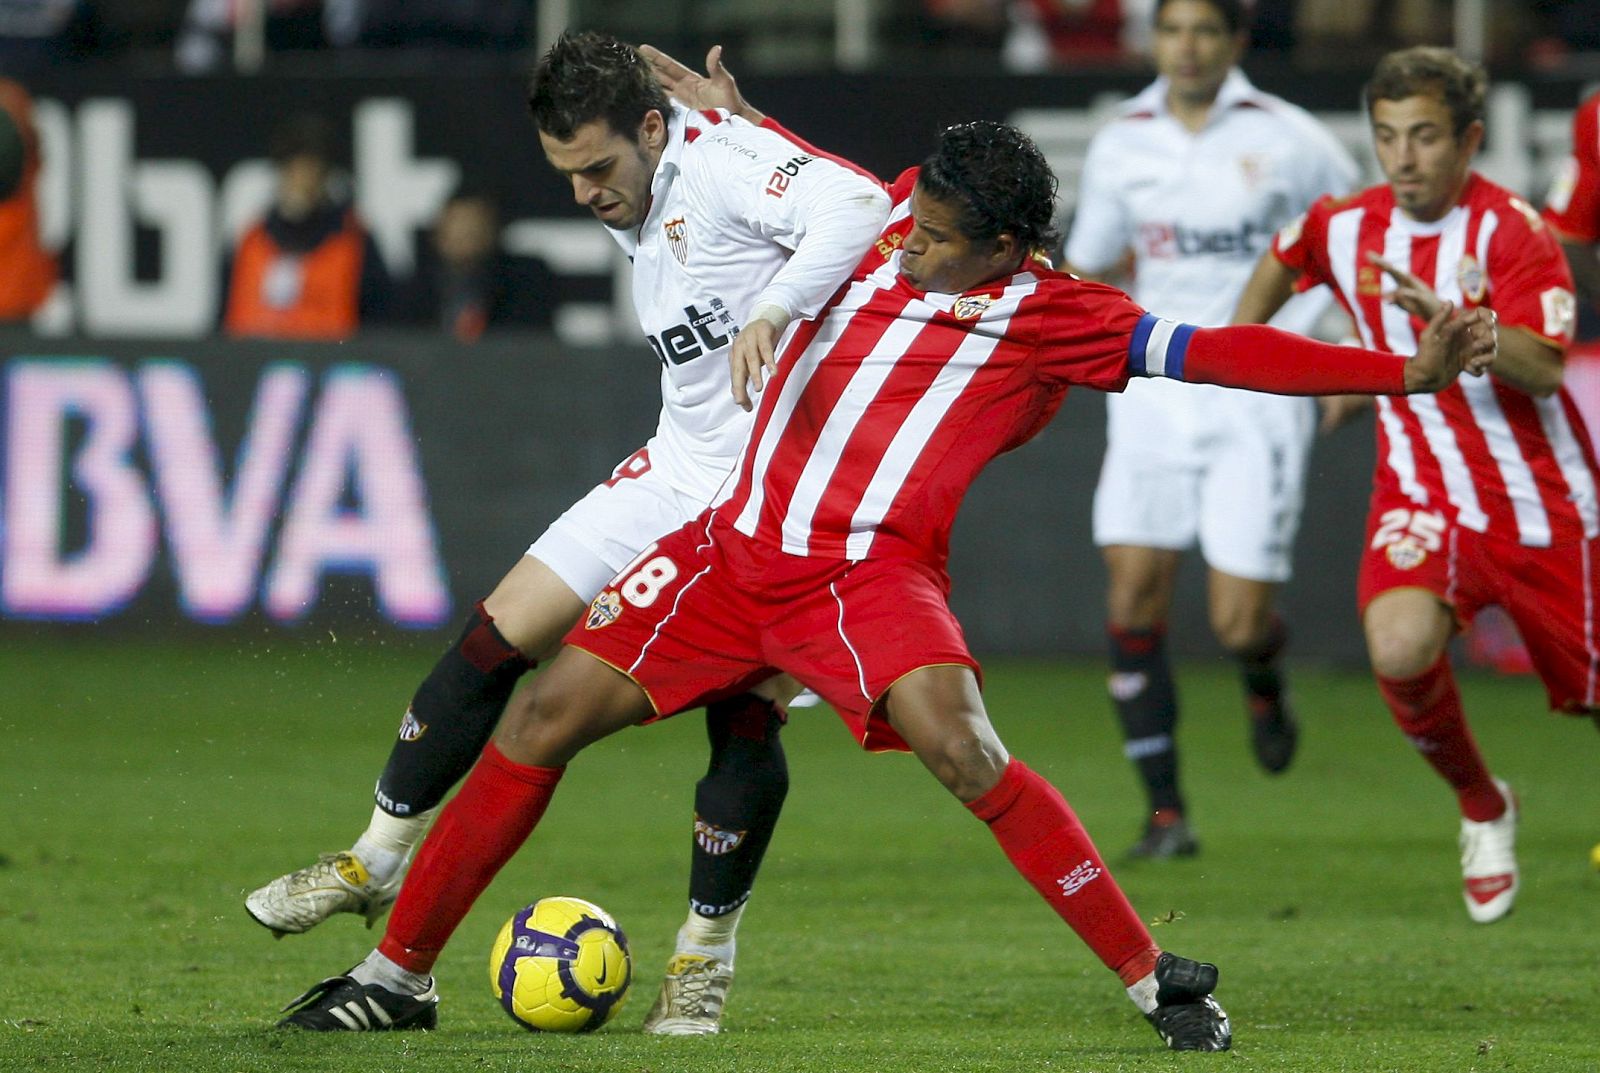 El defensa del Almería, Wilmer Acasiete, lucha por el balón ante el delantero del Sevilla, Álvaro Negredo.